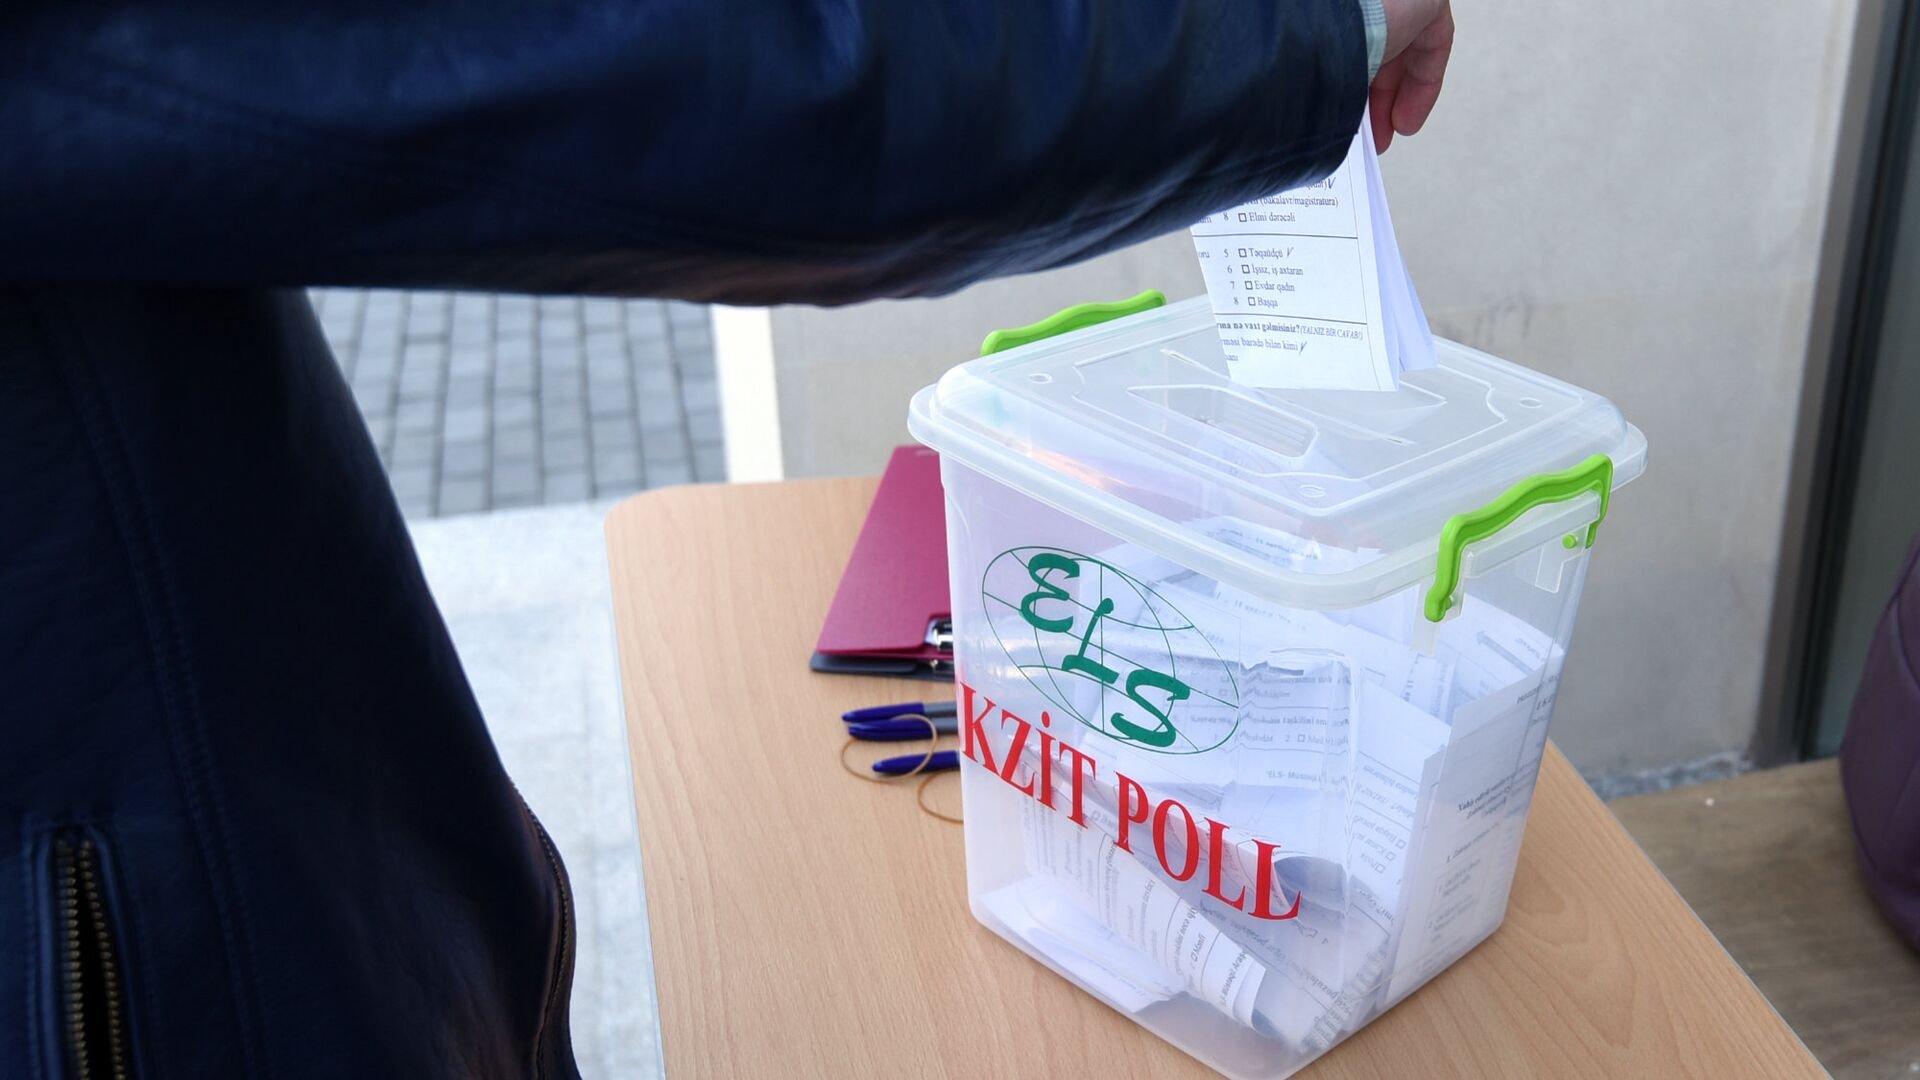 Стало известно количество организаций, подавших заявки на проведение "exit-poll” на президентских выборах в Азербайджане